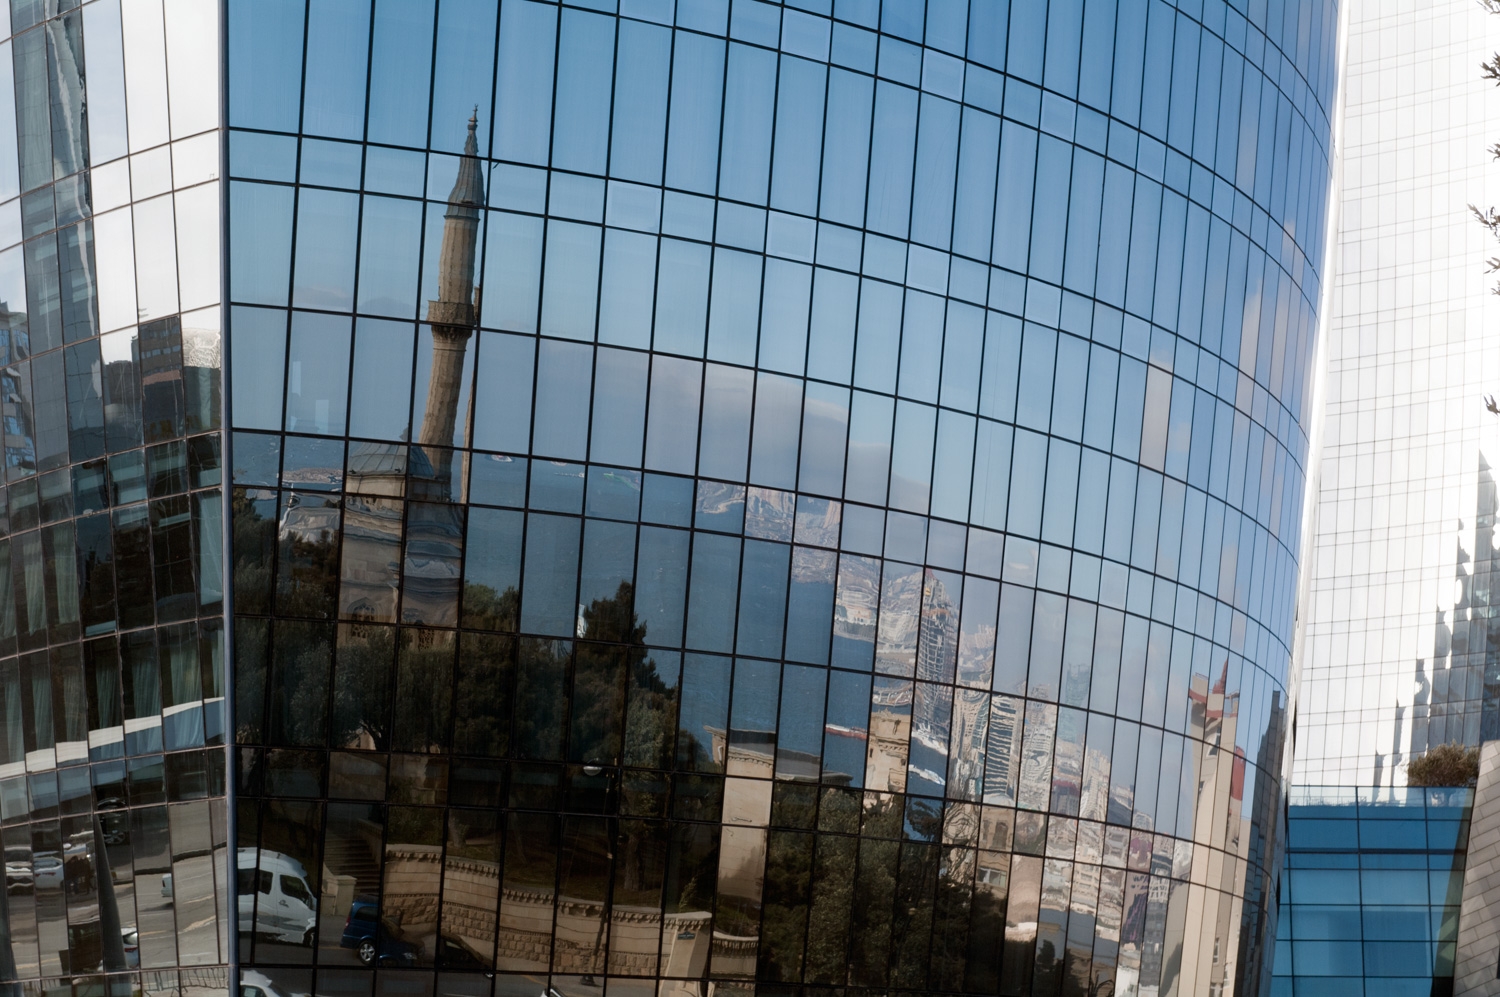 Reflecting Upon Baku